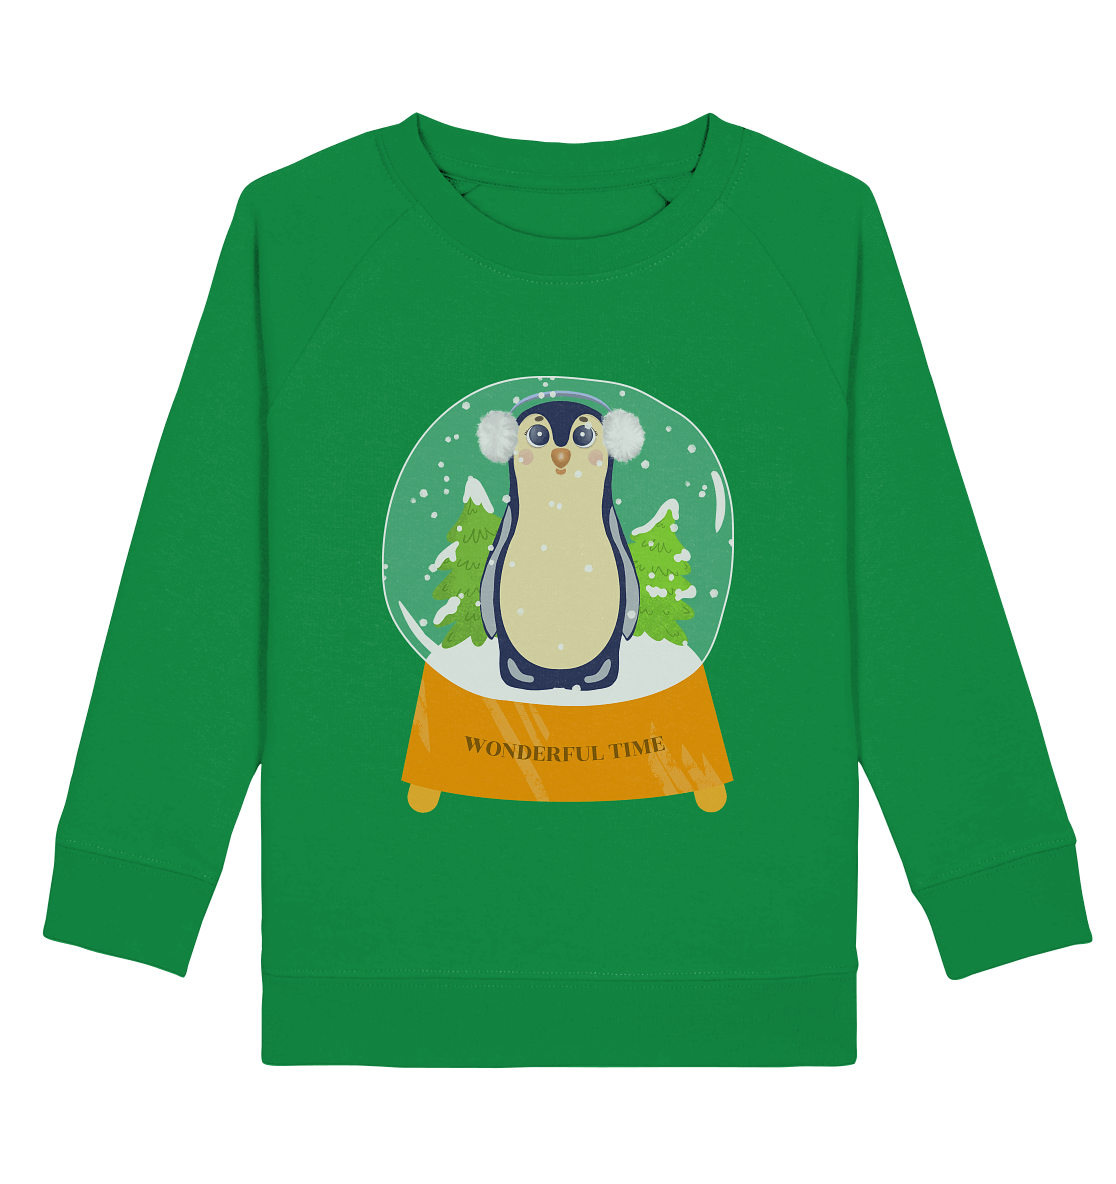 Pinguin cartoon in glaskugel Kinder Sweatshirt in green mit handgezeichneten Pinguin Cartoon sweatshirt in grün